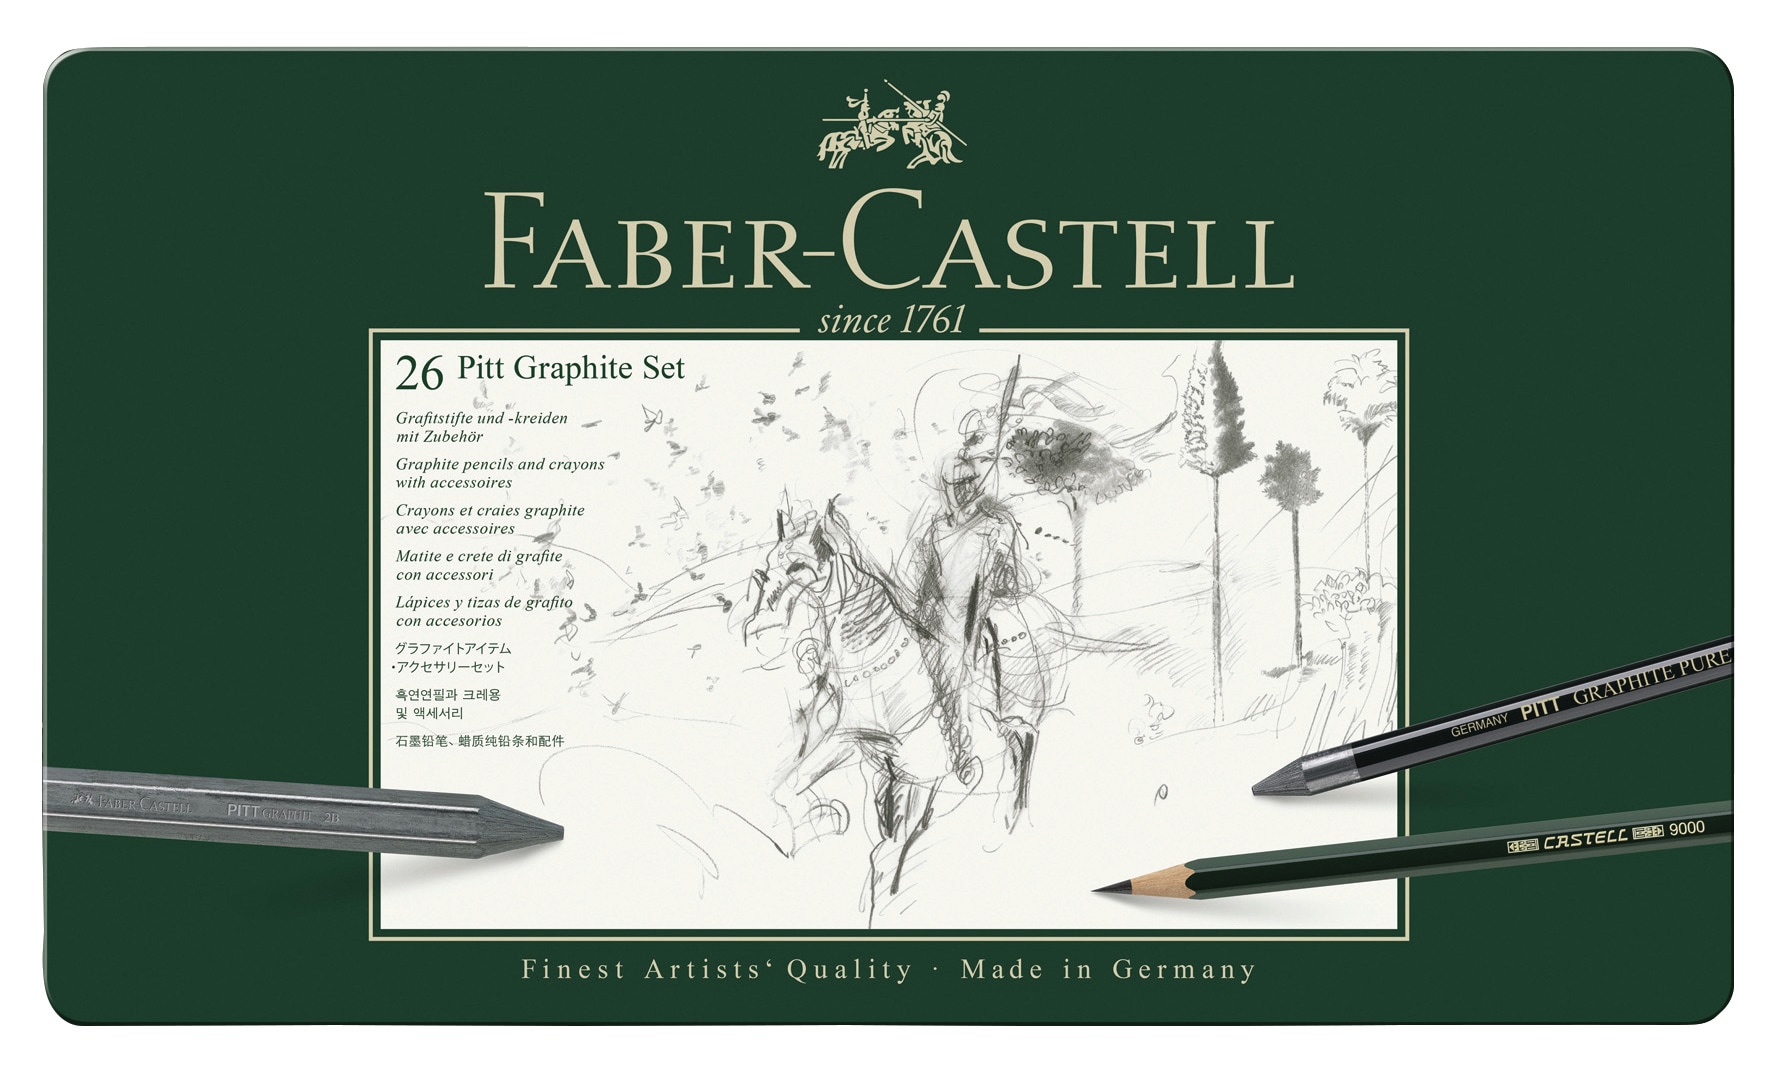 Faber-Castell & Pitt 26 Piece Graphite Tin Set